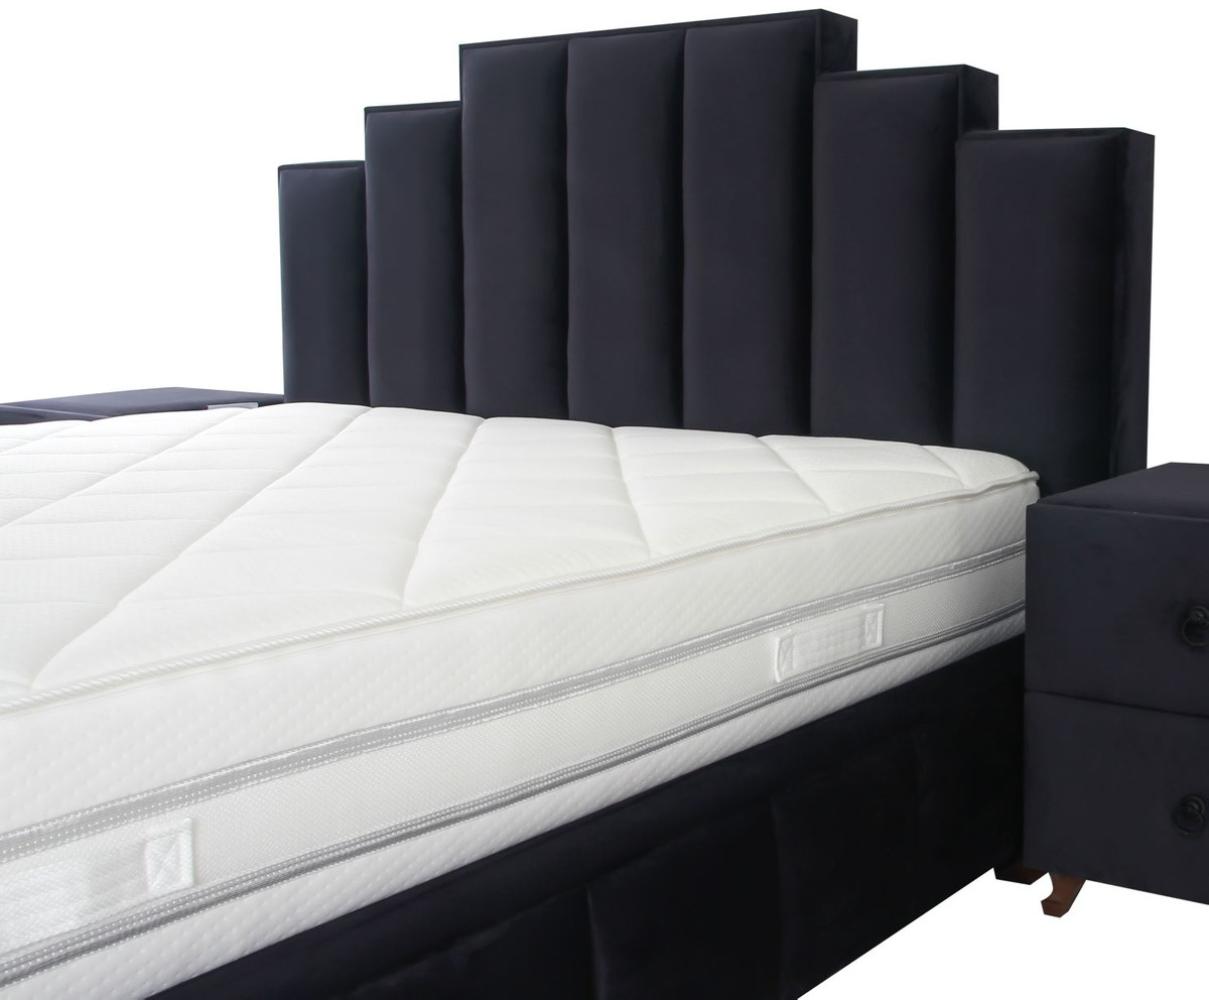 Casa Padrino Luxus Doppelbett Lila / Braun - Verschiedene Größen - Modernes Bett mit Matratze - Schlafzimmer Möbel Bild 1